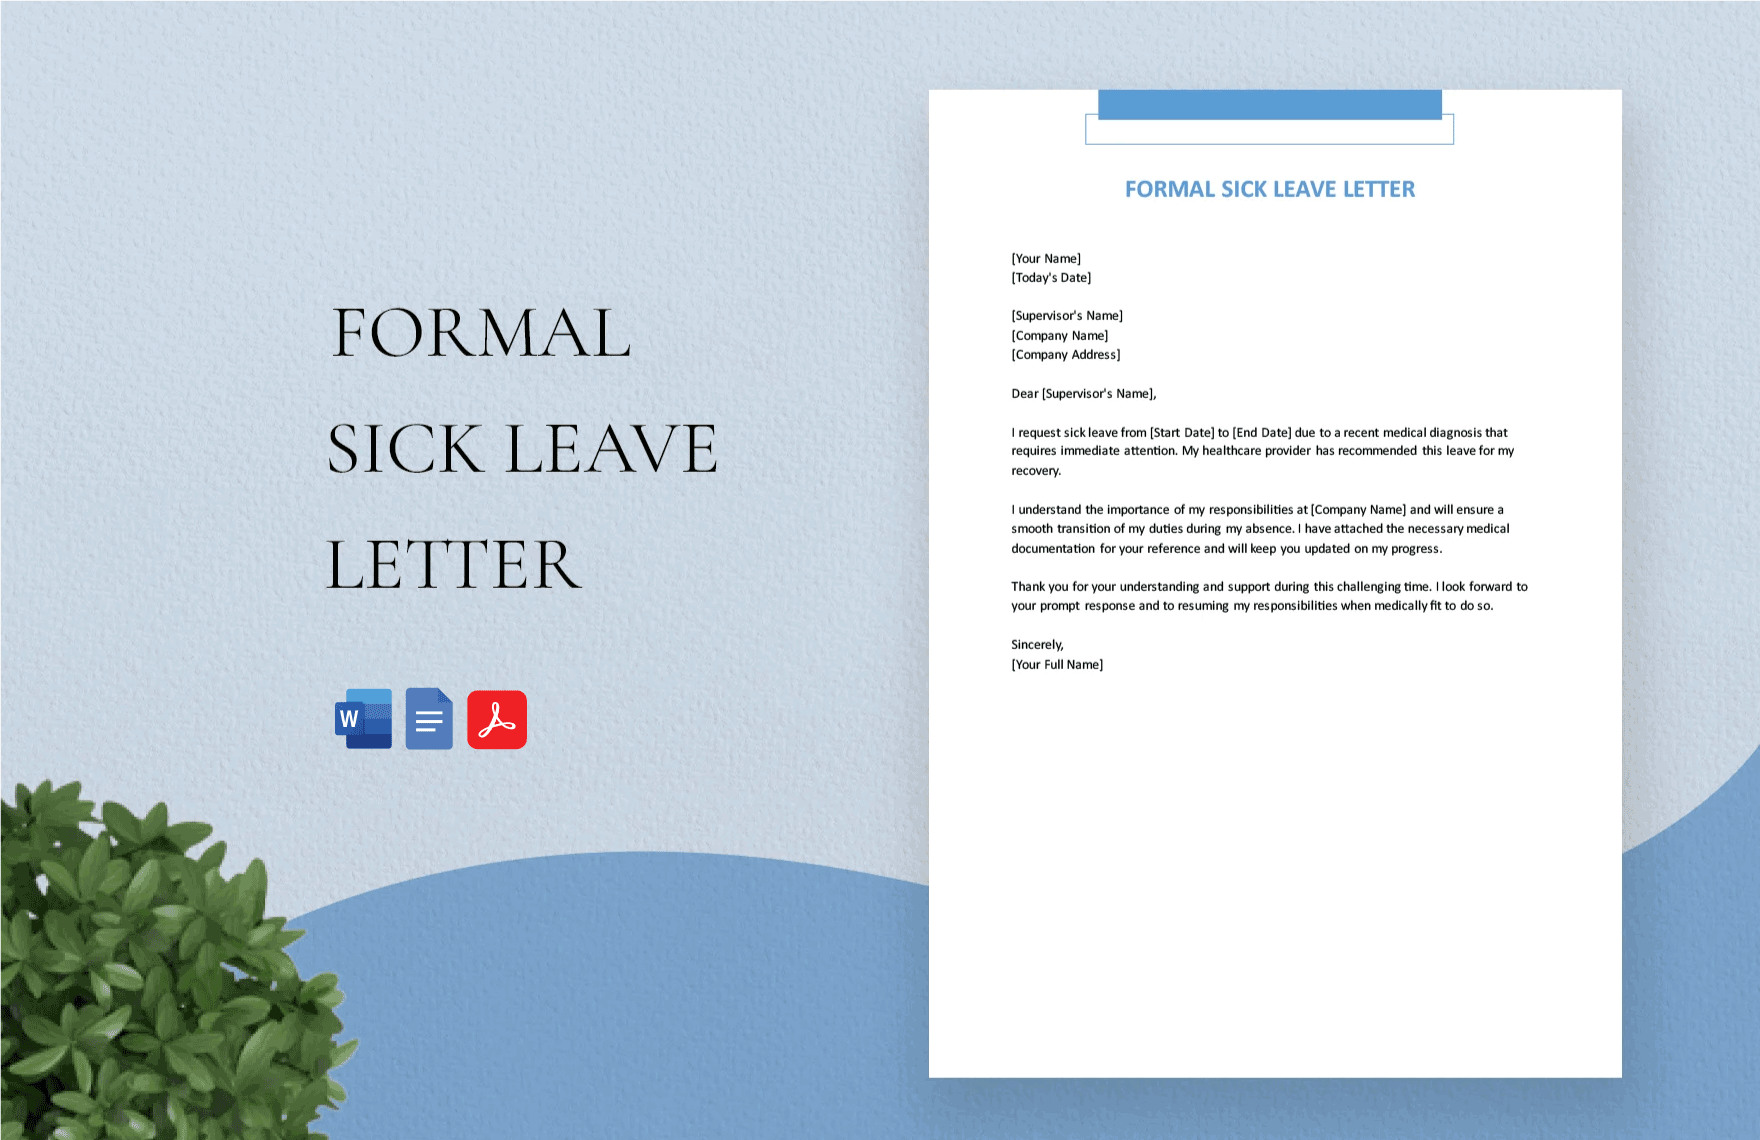 Formal Sick Leave Letter in Word, Google Docs, PDF